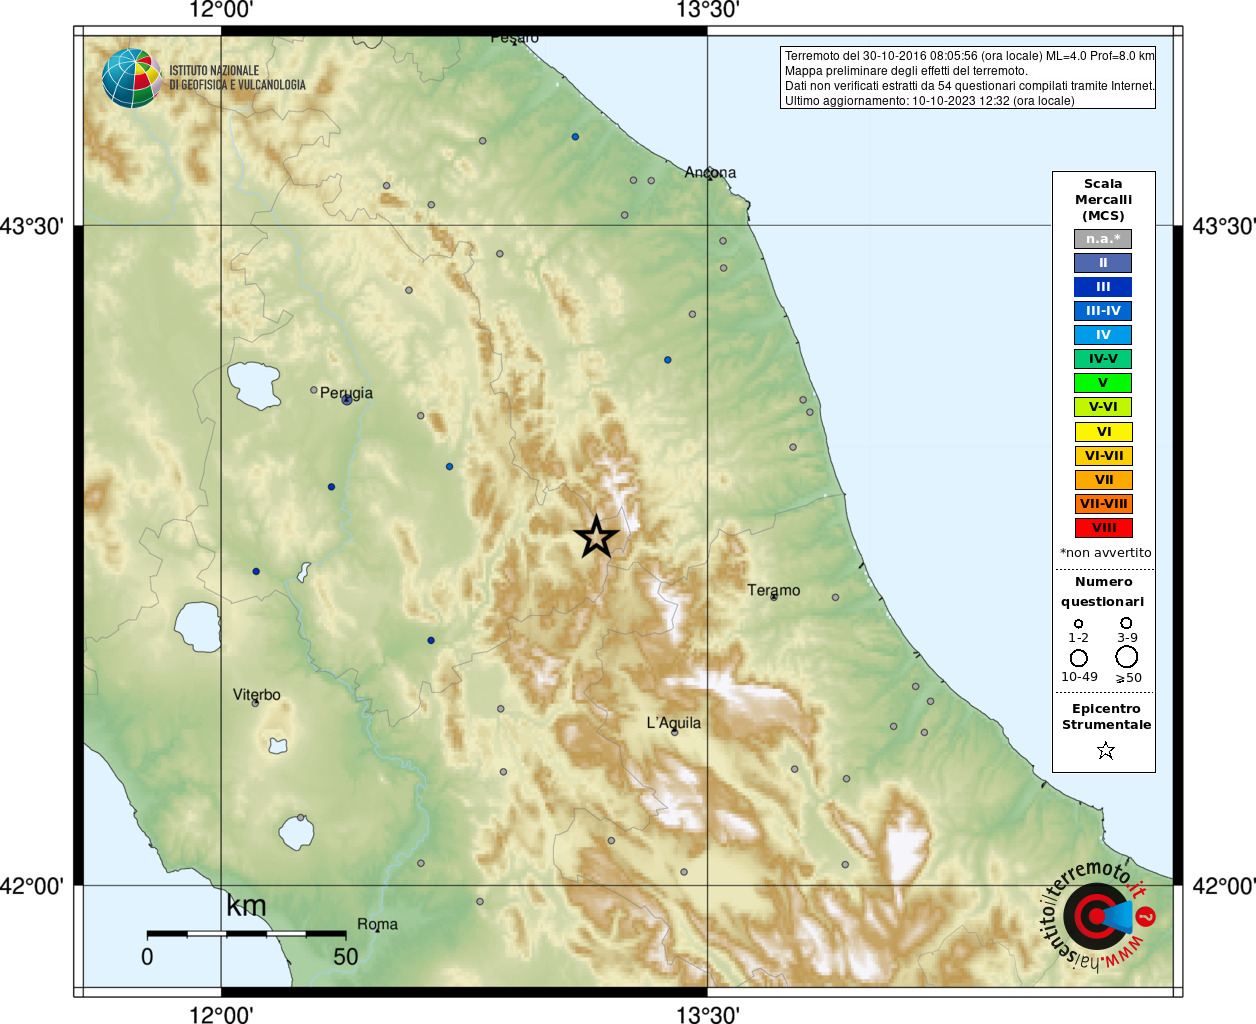 Earthquake 5 km E Norcia (PG), Magnitude ML 4.0, 30 October 2016 time 08:05:56 ...